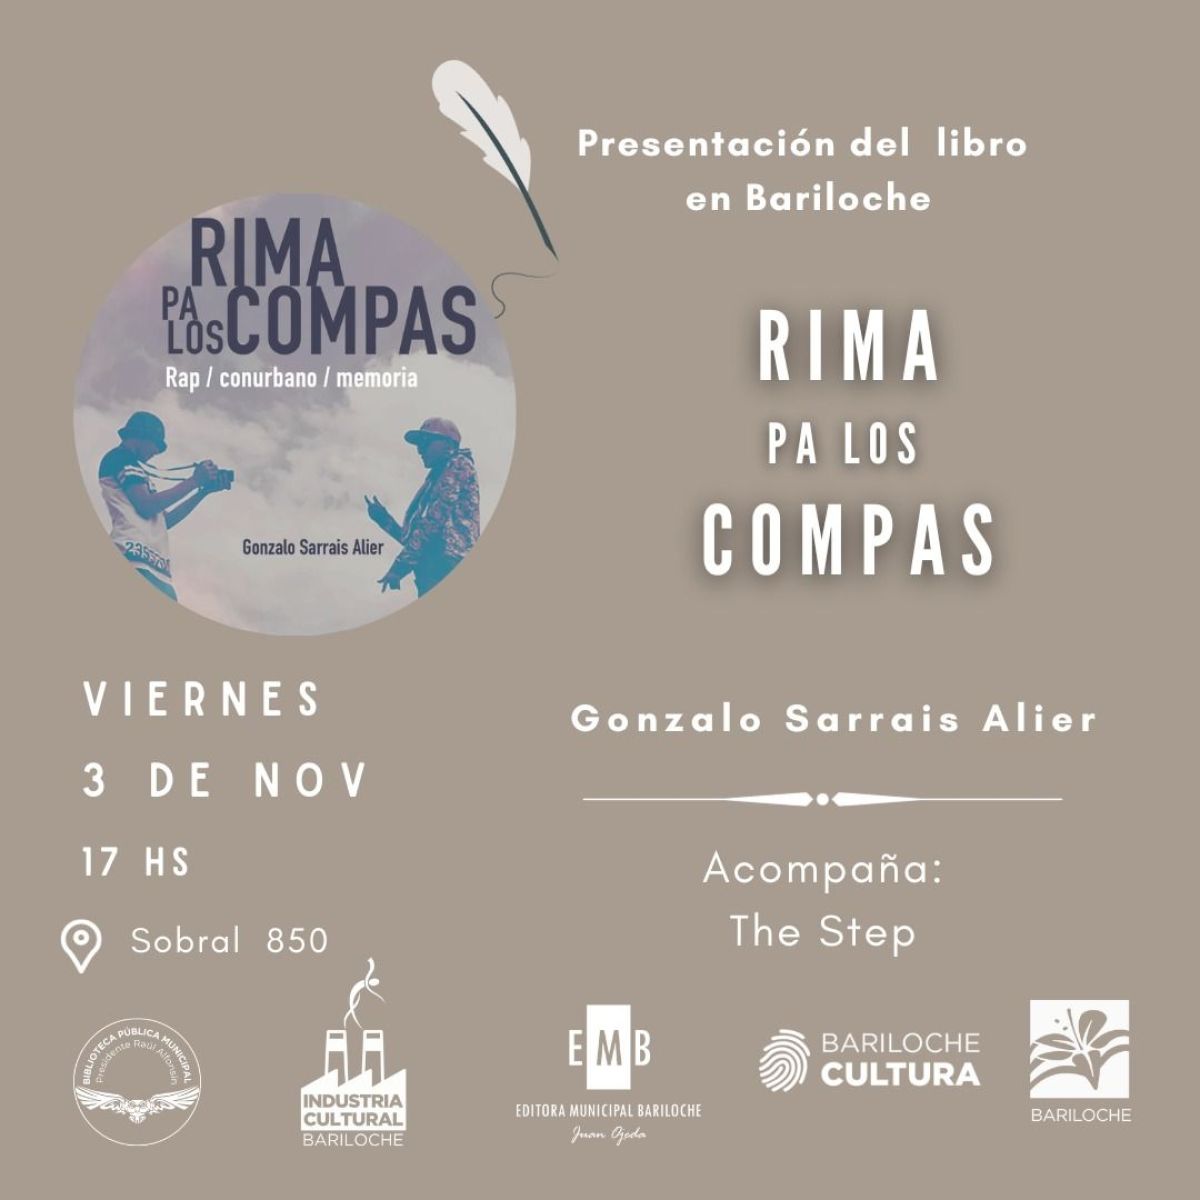 Se presenta el libro “Rima pa los compas” de Gonzalo Sarrais Alier en la Biblioteca Municipal